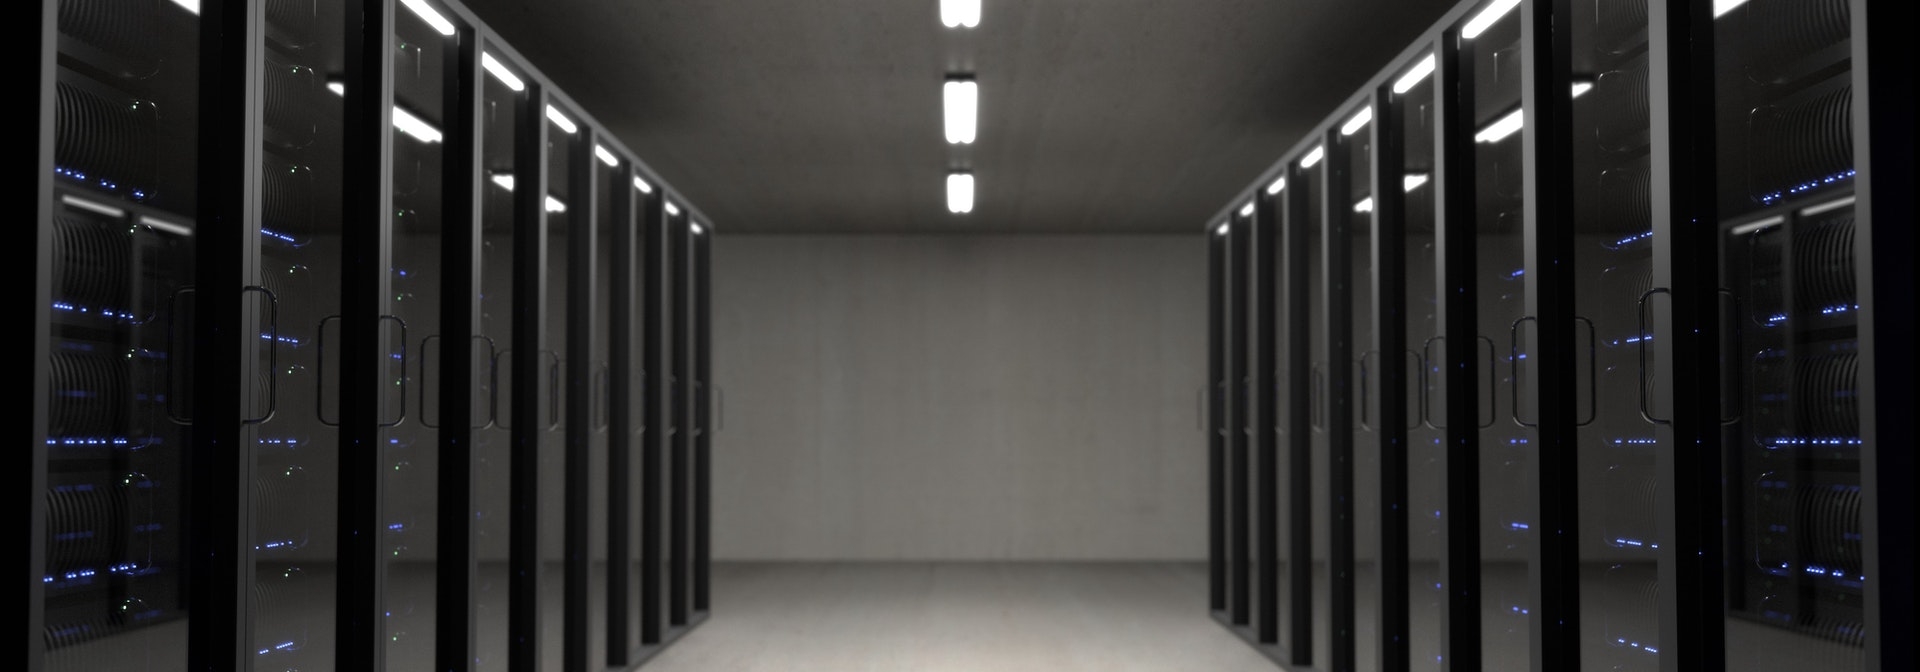 A view of a high tech data servers hallway